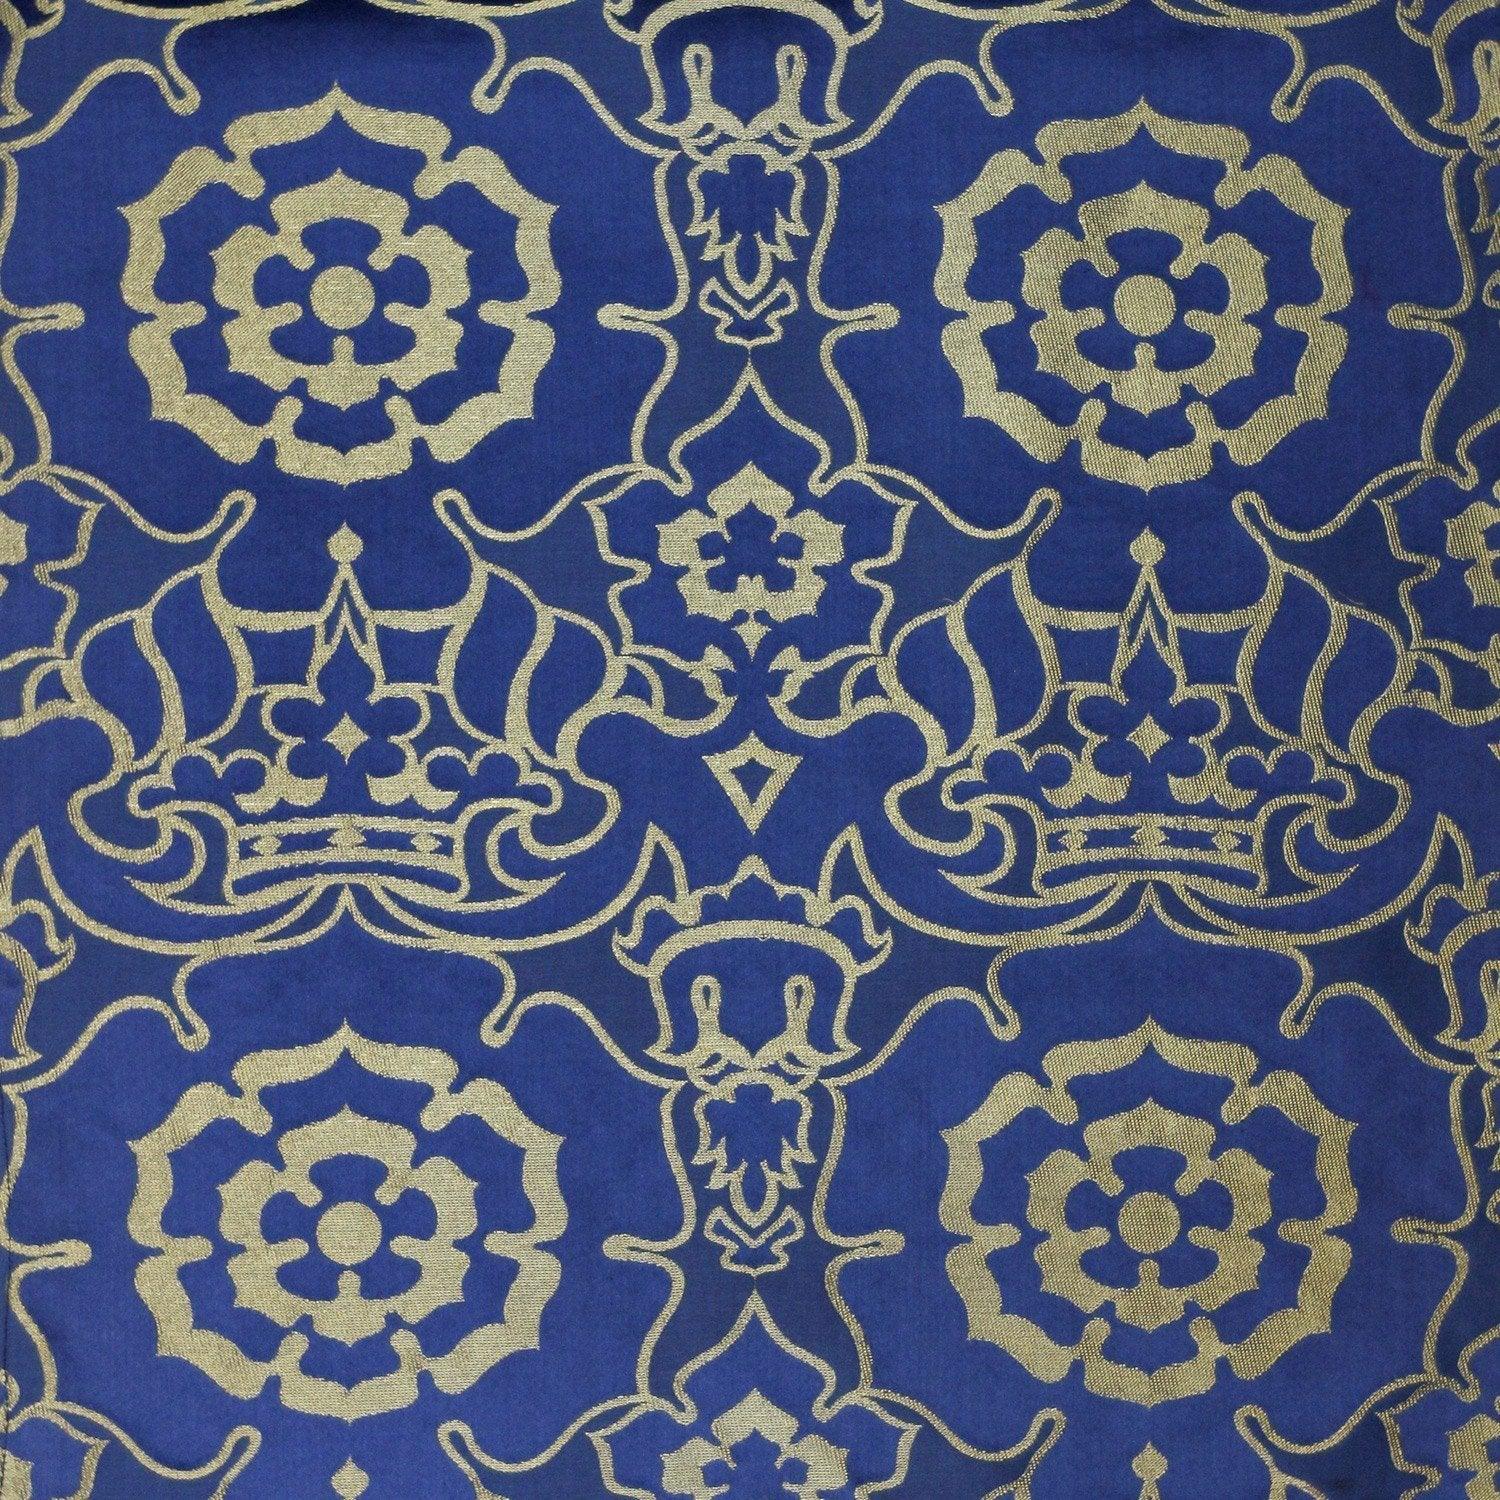 Coronation Damask - Blue & Gold - Watts & Co. (international)